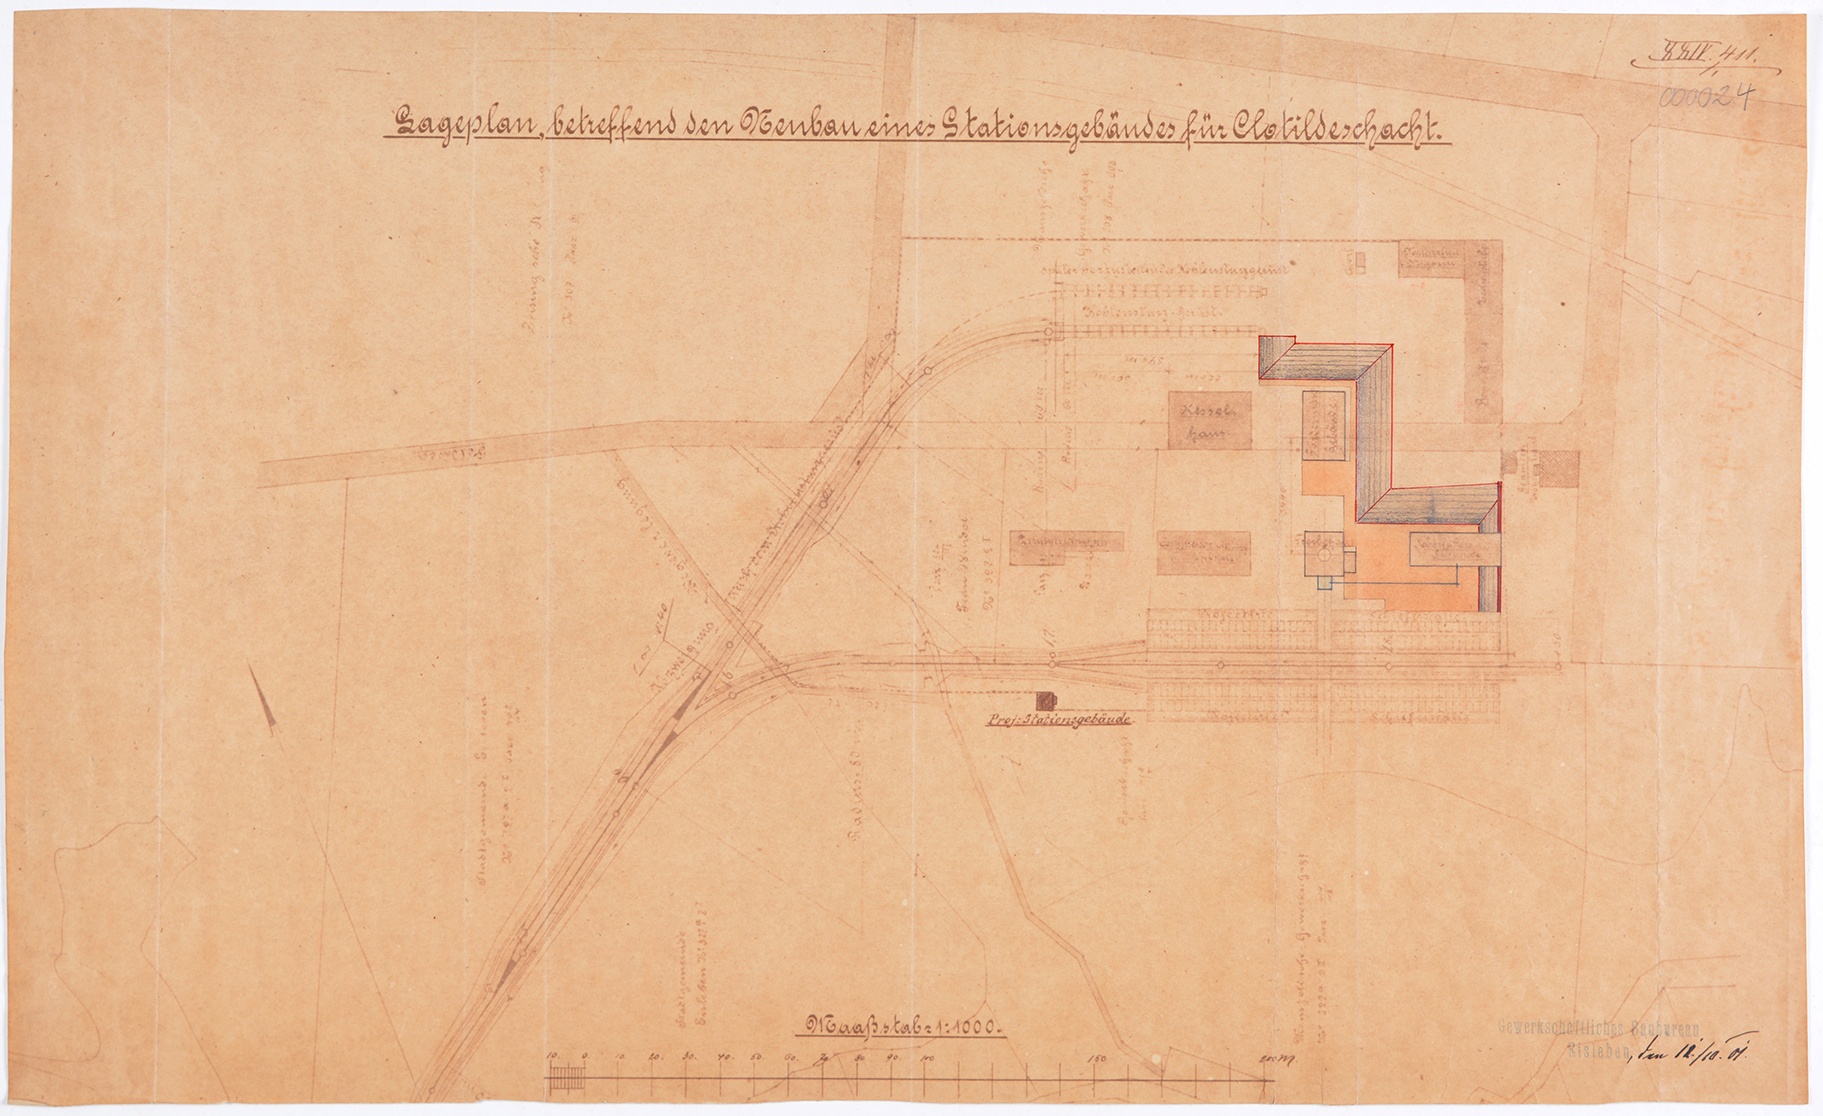 Lageplan betreffend den Neubau eines Stationsgebäudes für Clotildeschacht (Mansfeld-Museum im Humboldt-Schloss CC BY-NC-SA)